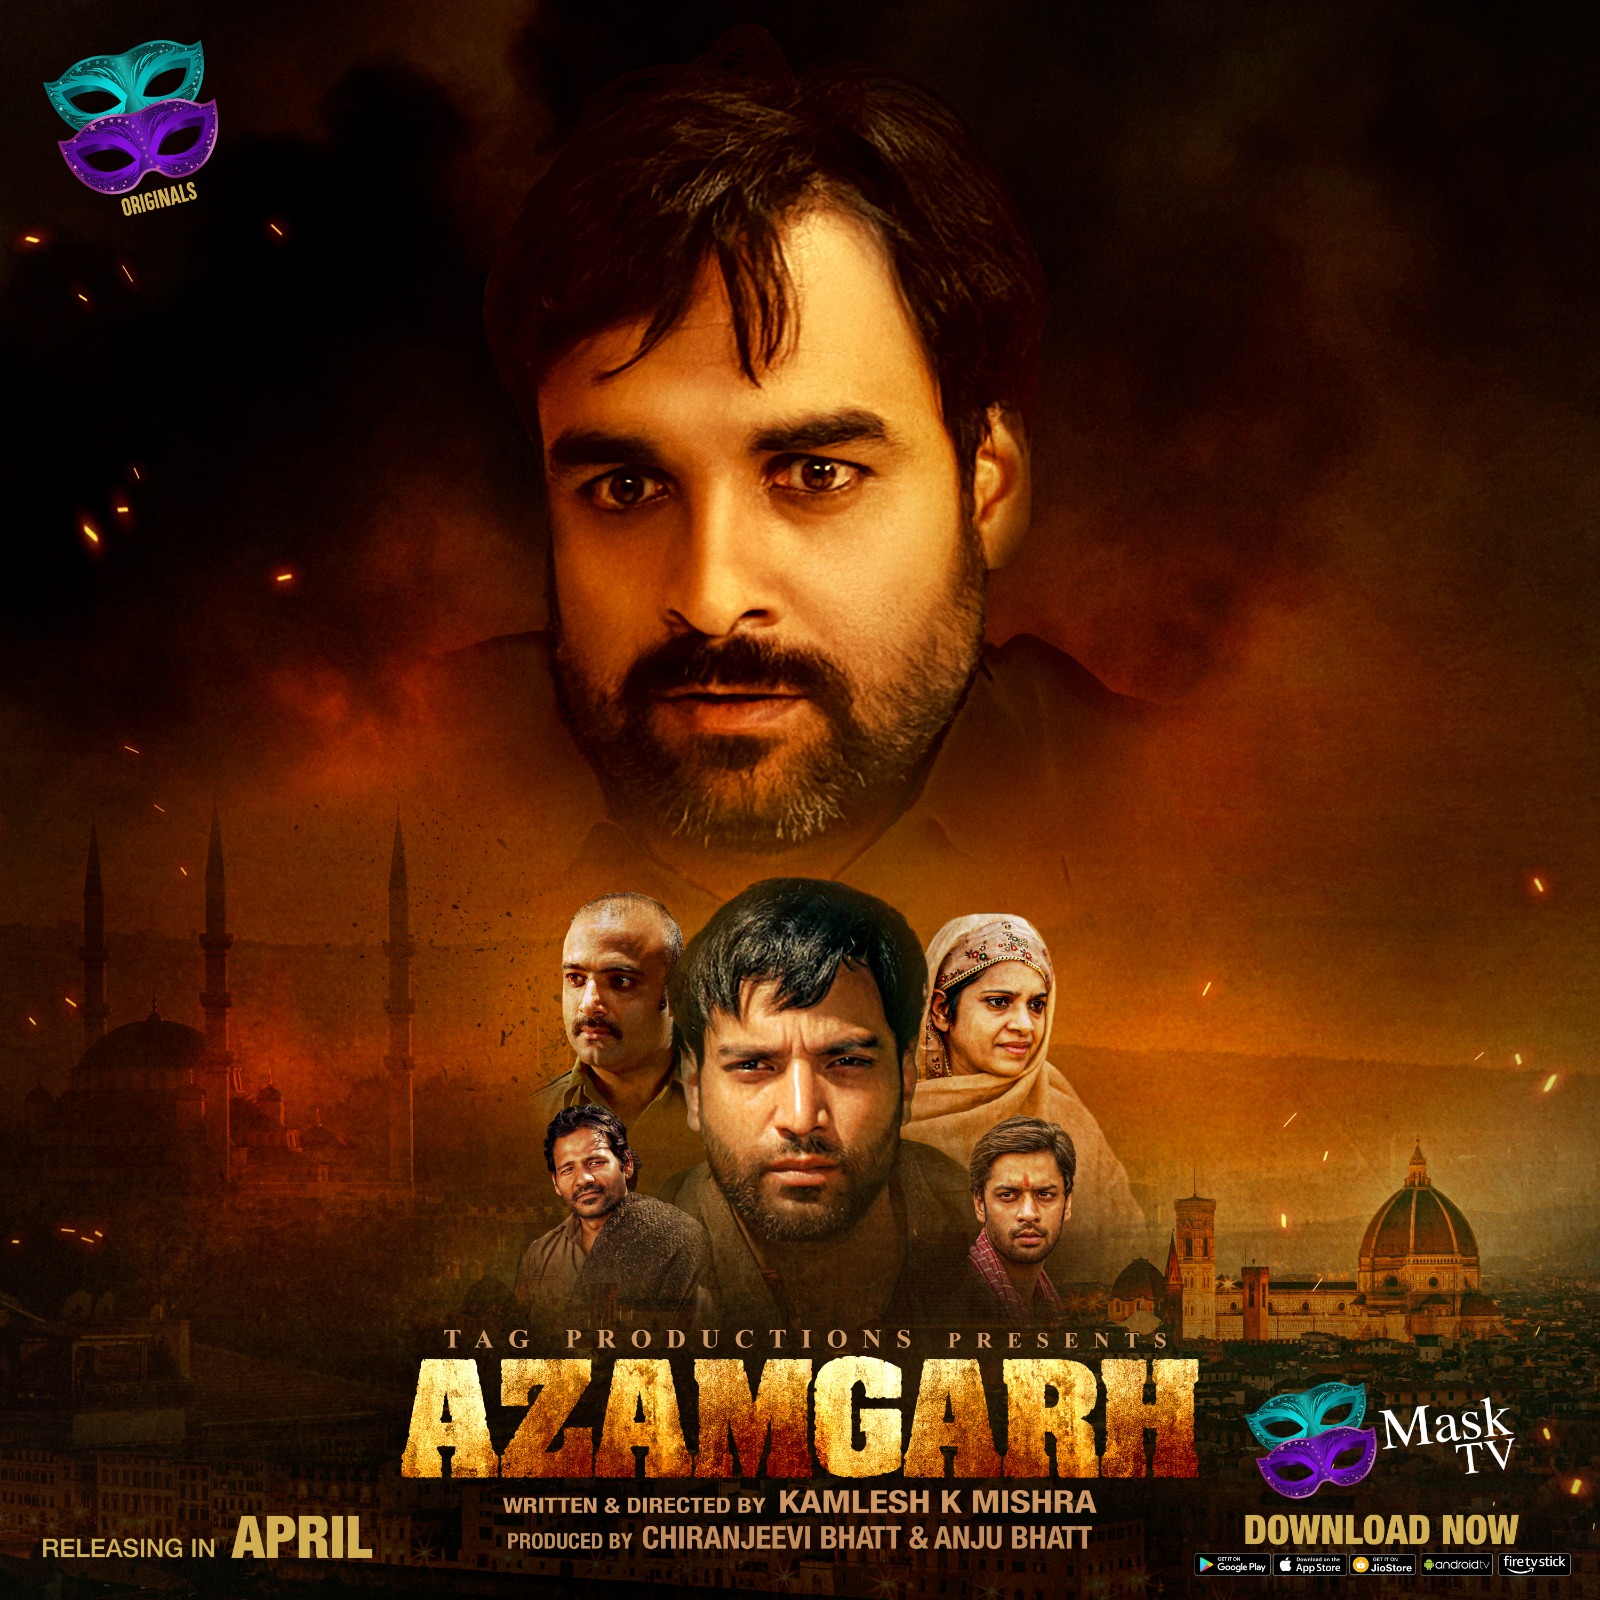 Azamgarh Film